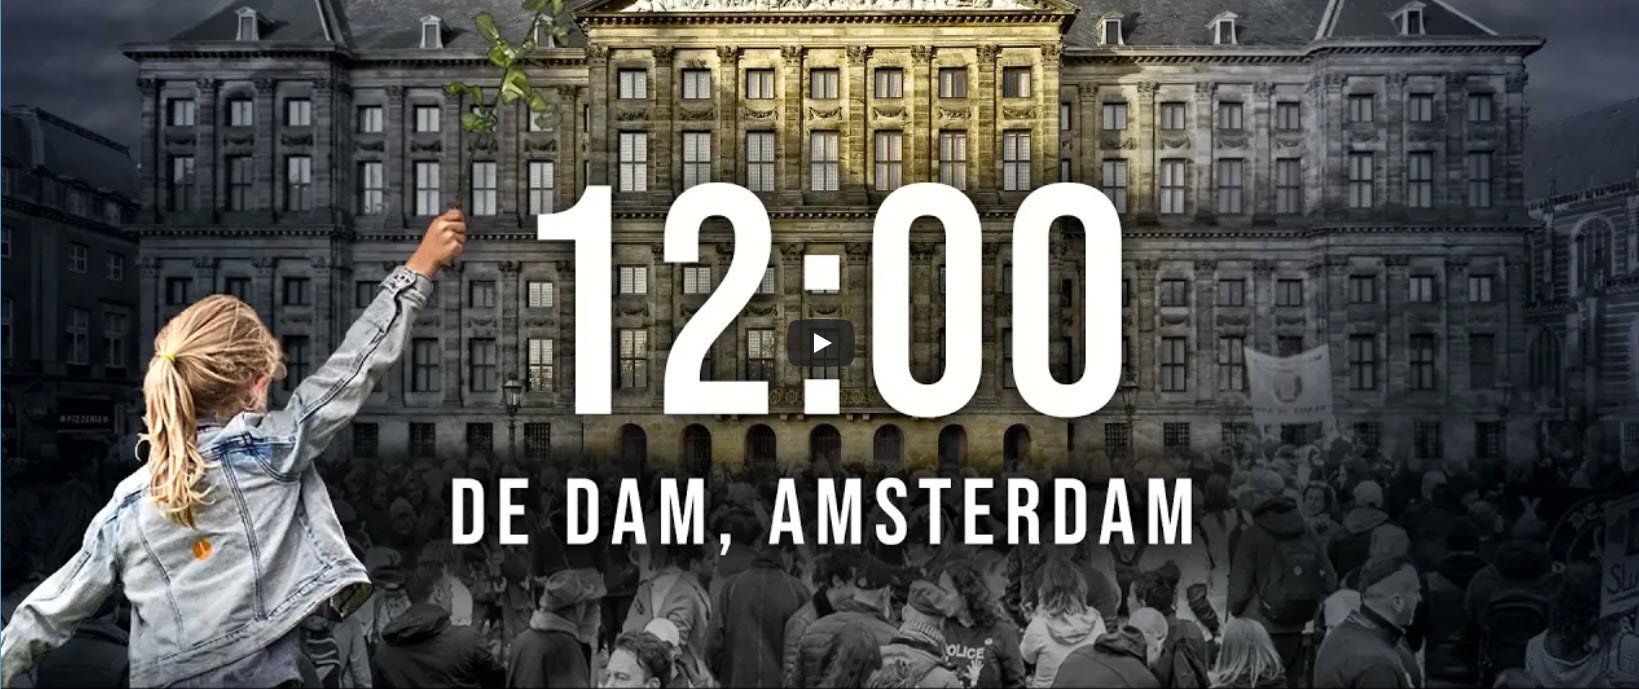 Samen voor NL - 5 september - De Dam, Amsterdam - parallelle economie